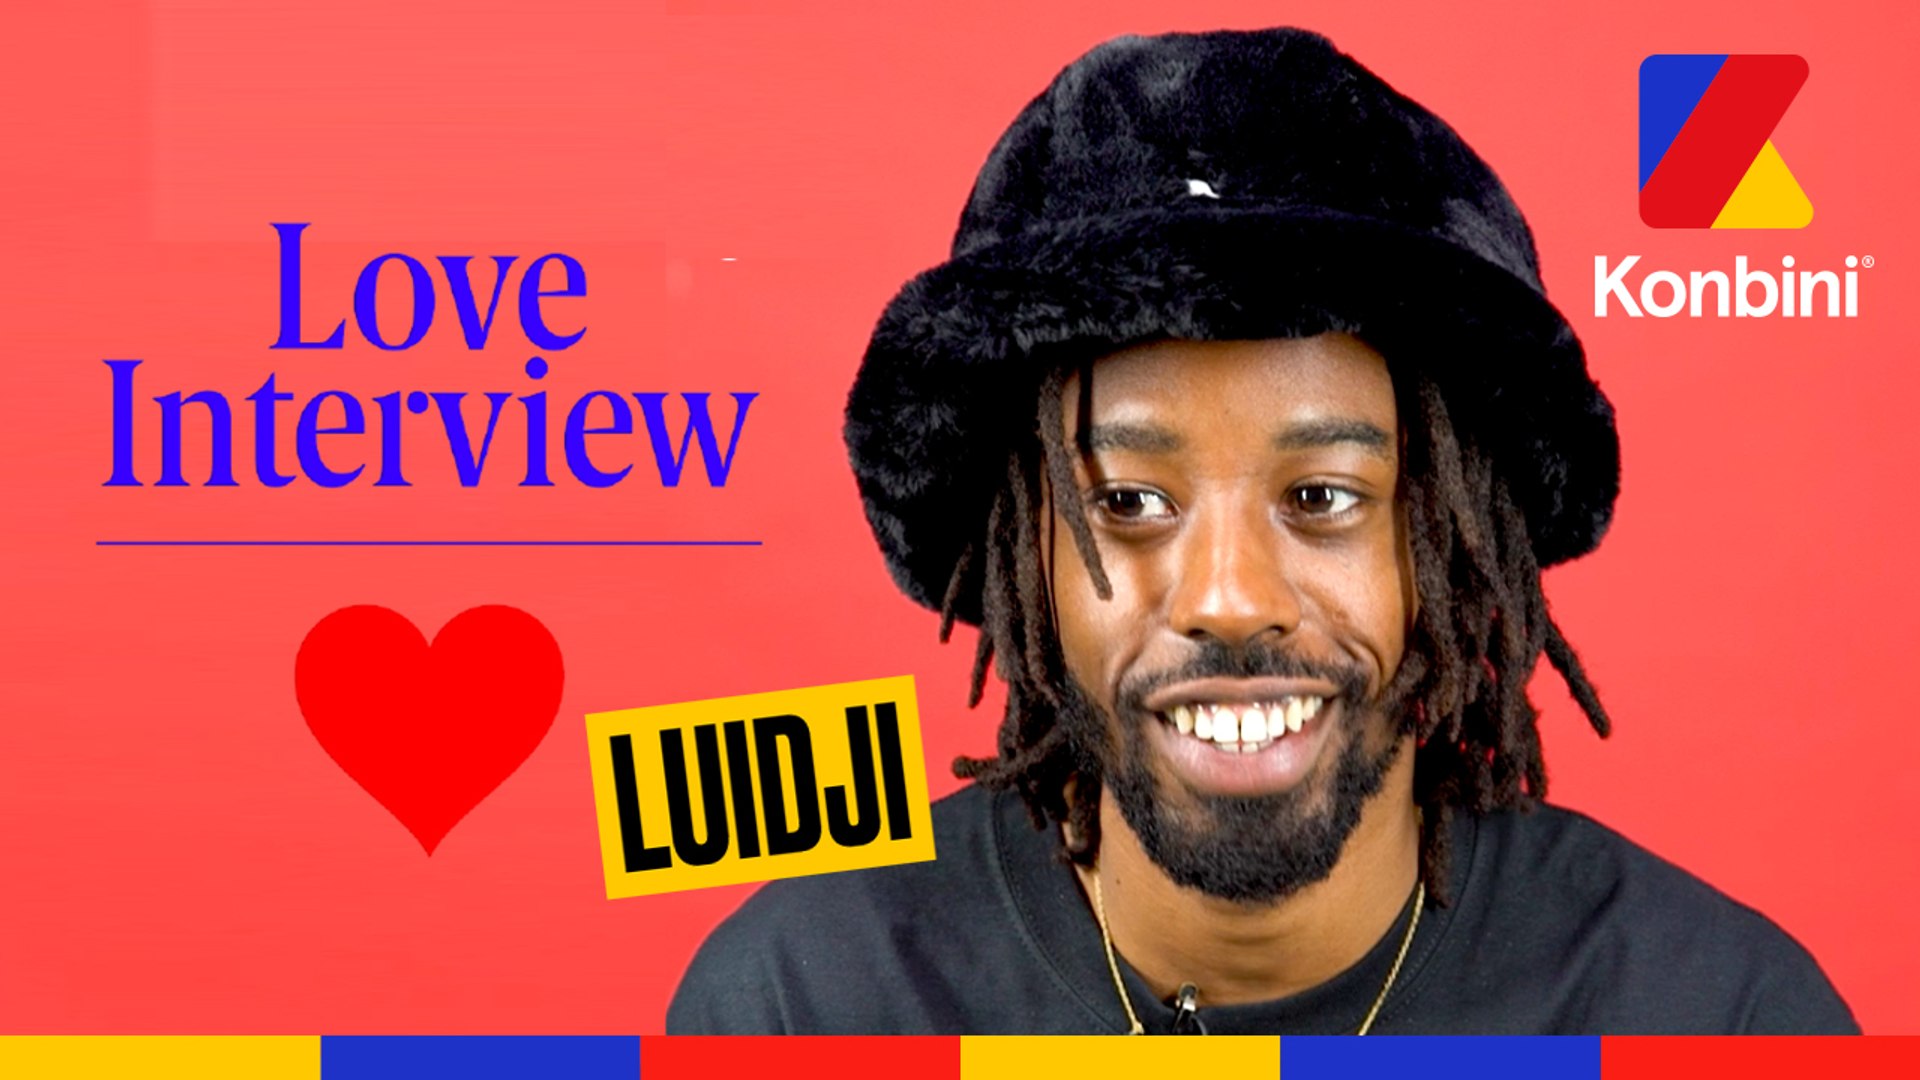 Luidji nous parle d'amour dans la Love Interview - Vidéo Dailymotion